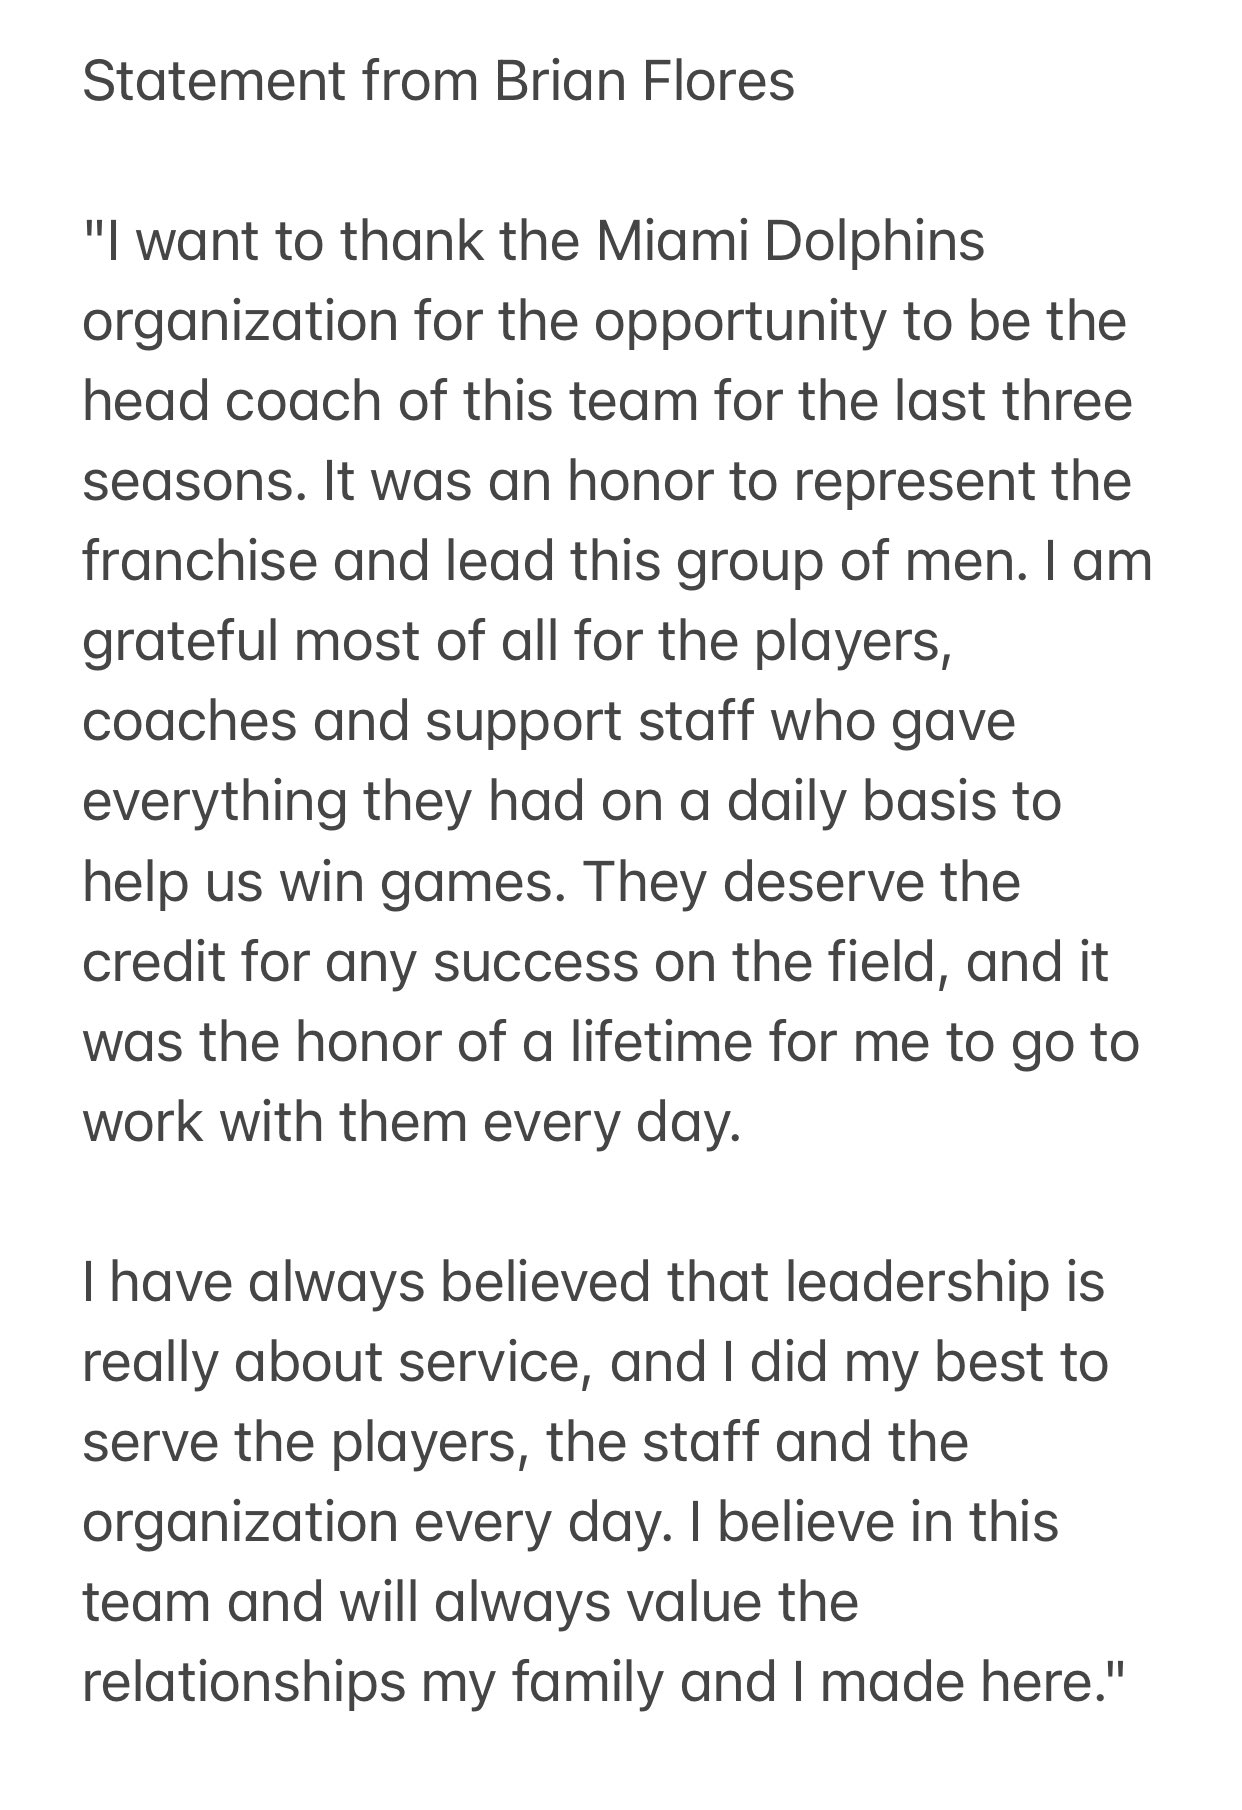 Brian Flores statement